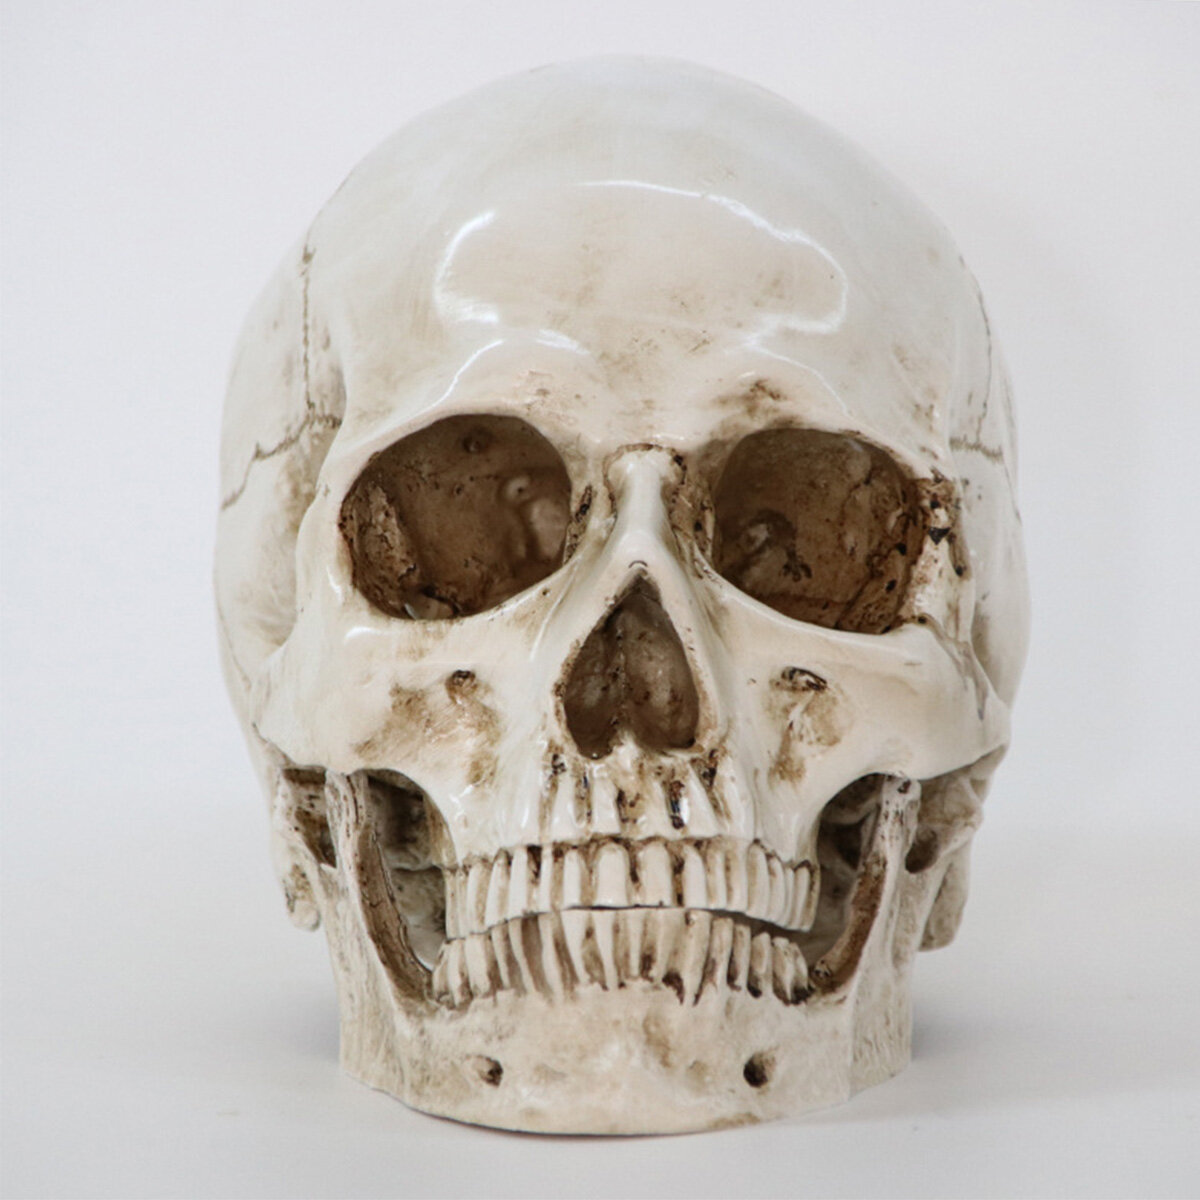 

Хэллоуин скелет головы декор модель скелета ужас страшная готика Череп реквизит украшения Хэллоуин атмосфера украшения